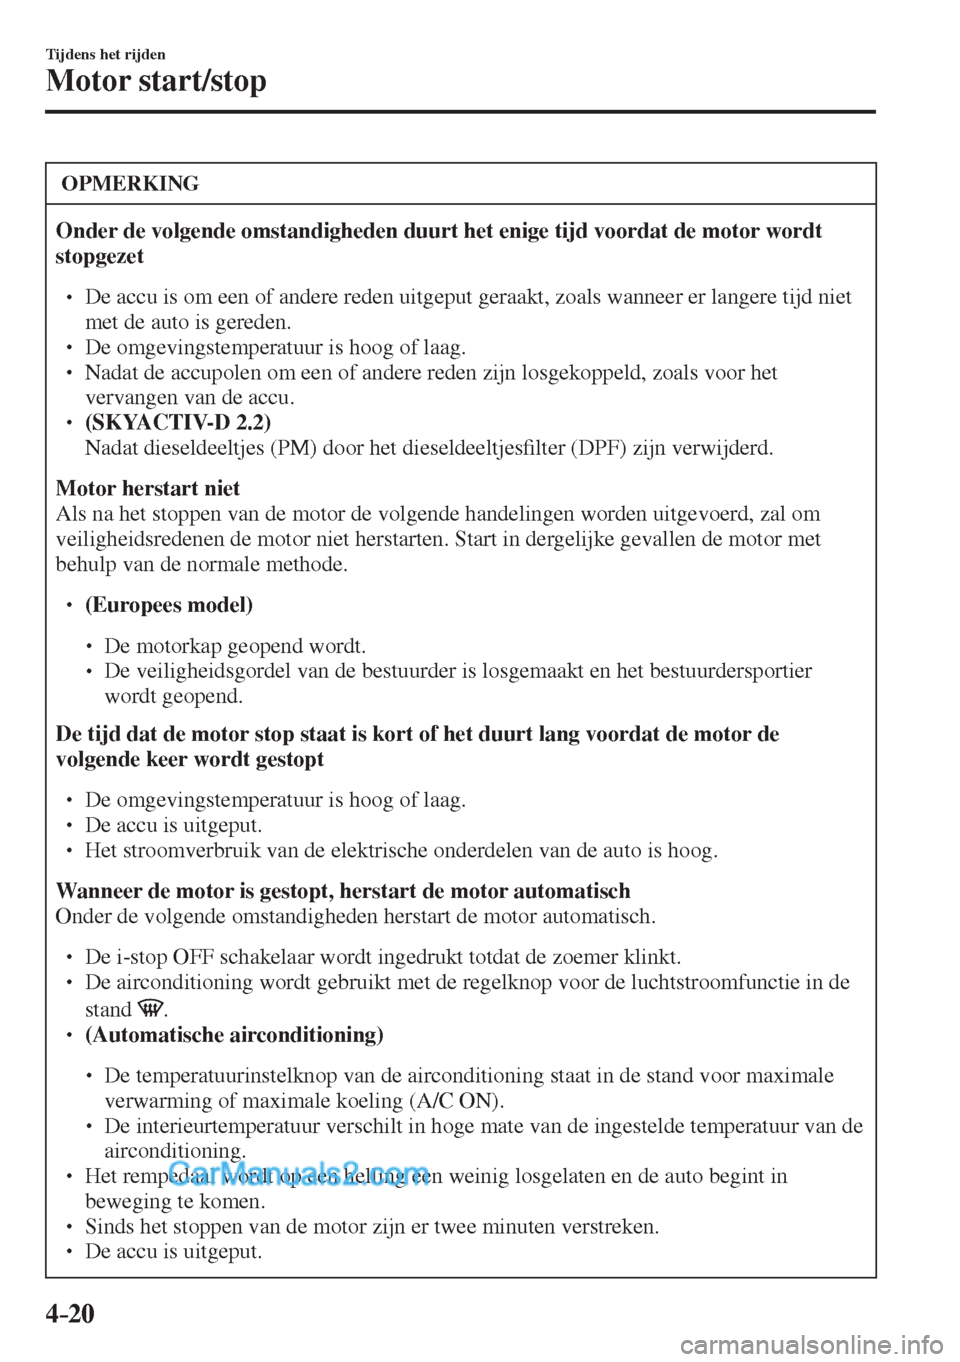 MAZDA MODEL CX-5 2017  Handleiding (in Dutch) 4–20
Tijdens het rijden
Motor start/stop
 OPMERKING
   Onder de volgende omstandigheden duurt het enige tijd voordat de motor wordt 
stopgezet  
 �
�
� ��  De accu is om een of andere reden uitg